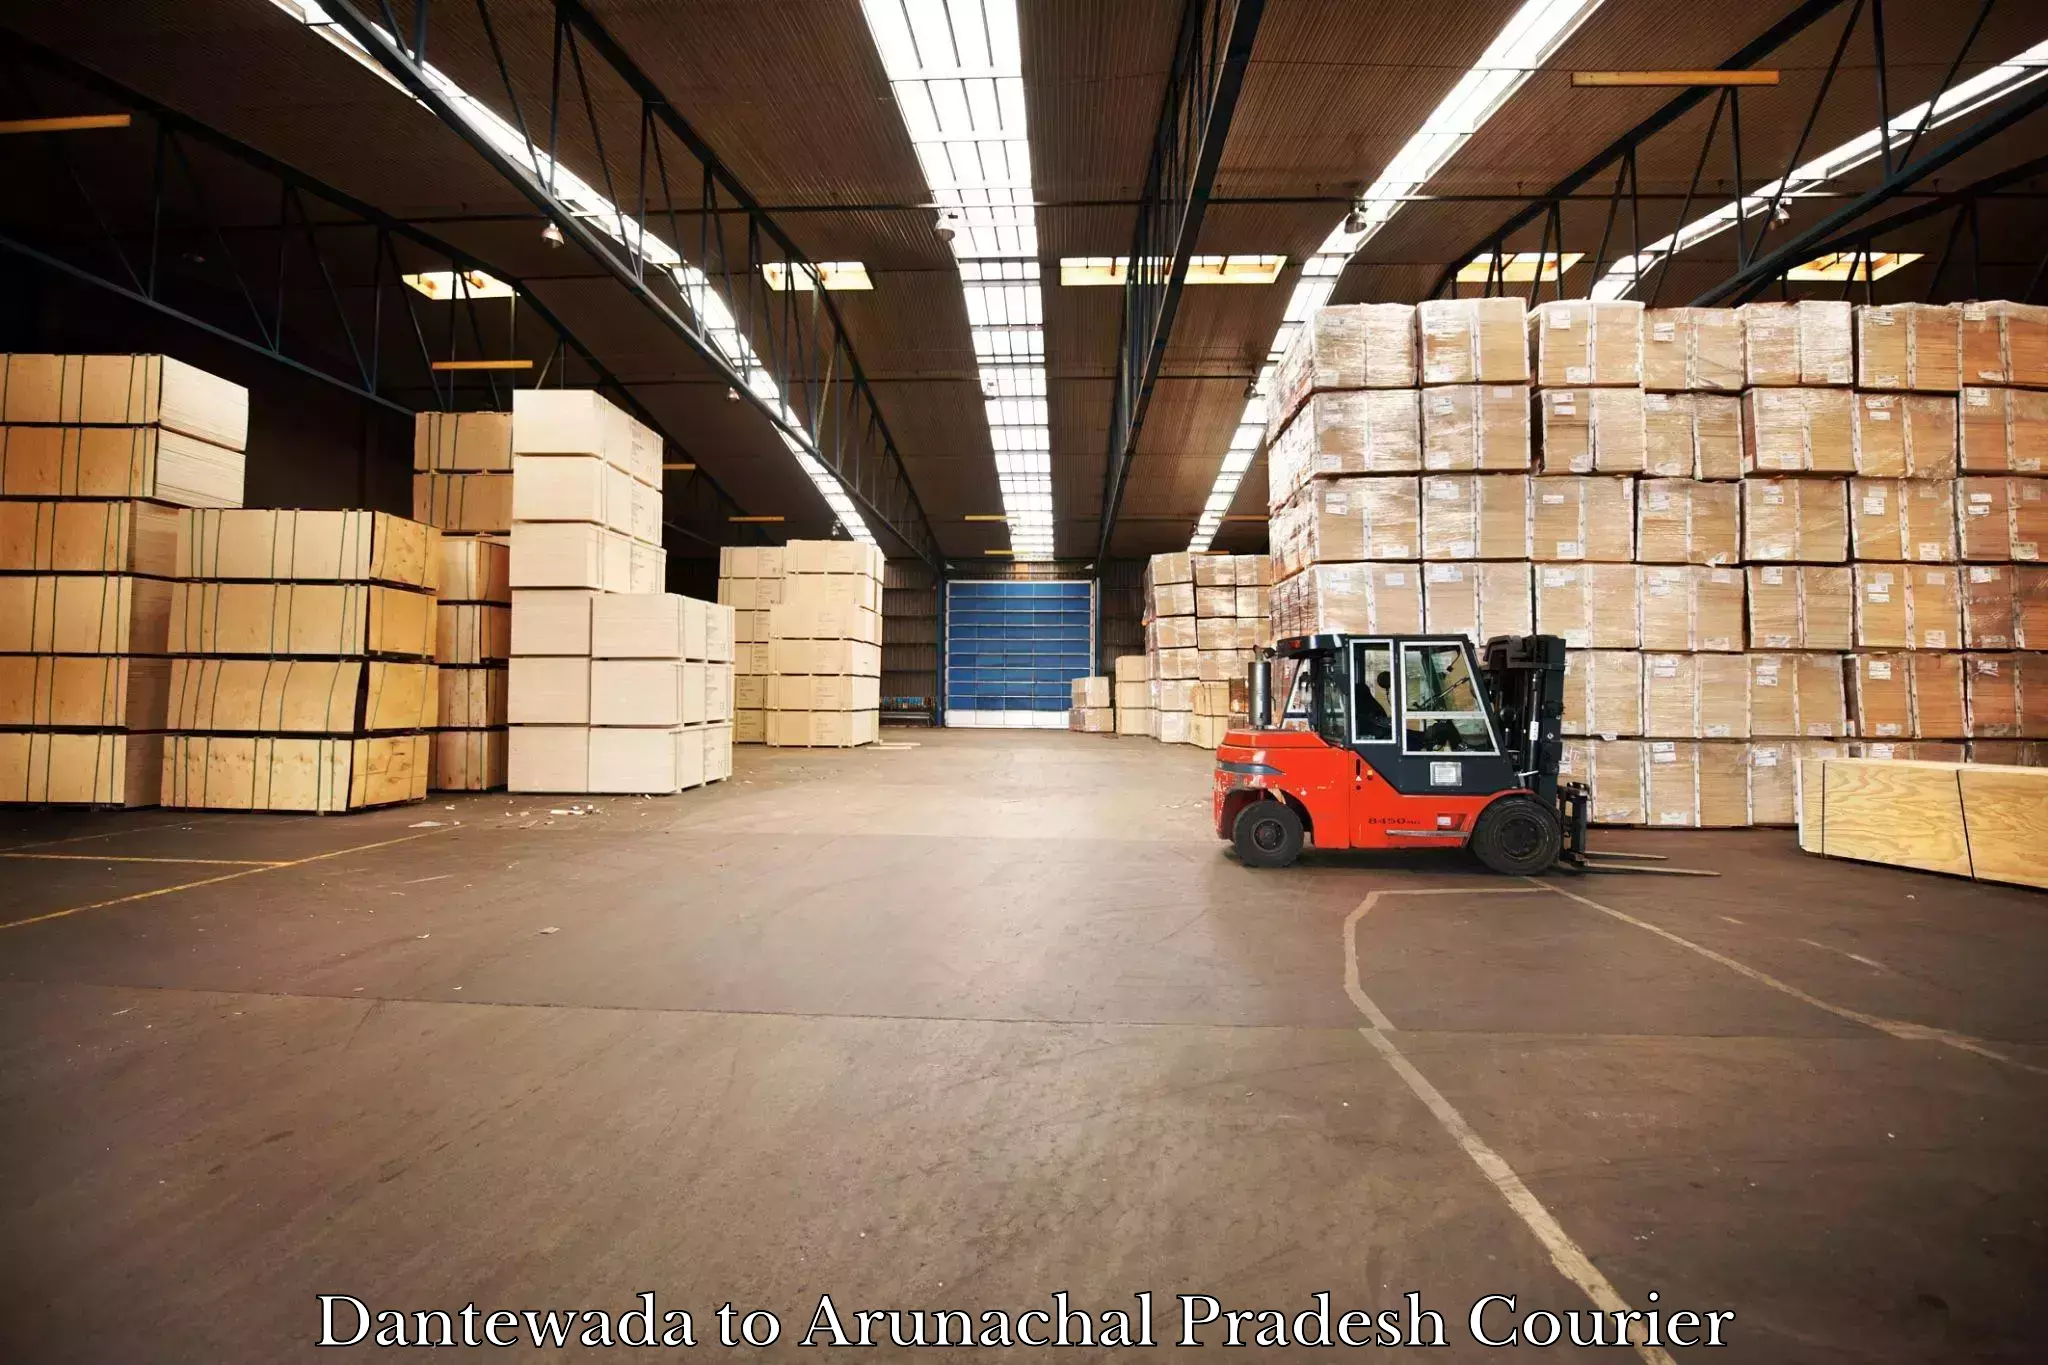 Global shipping solutions Dantewada to Boleng